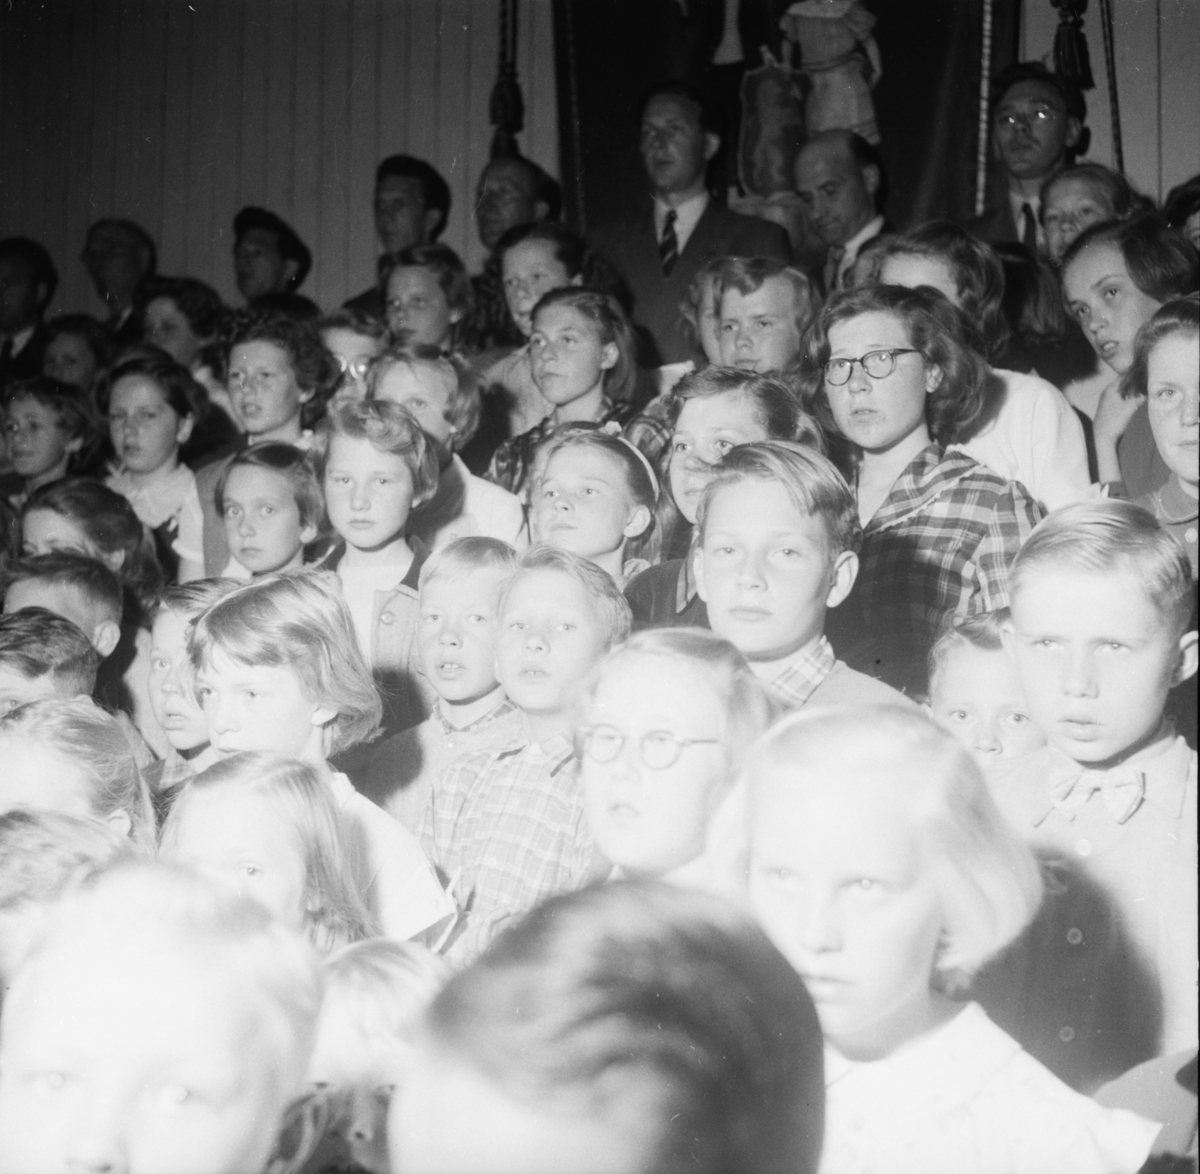 Vardens arkiv. "Skolekonsert på Lunde skole kl. 18.00"  13.05.1954